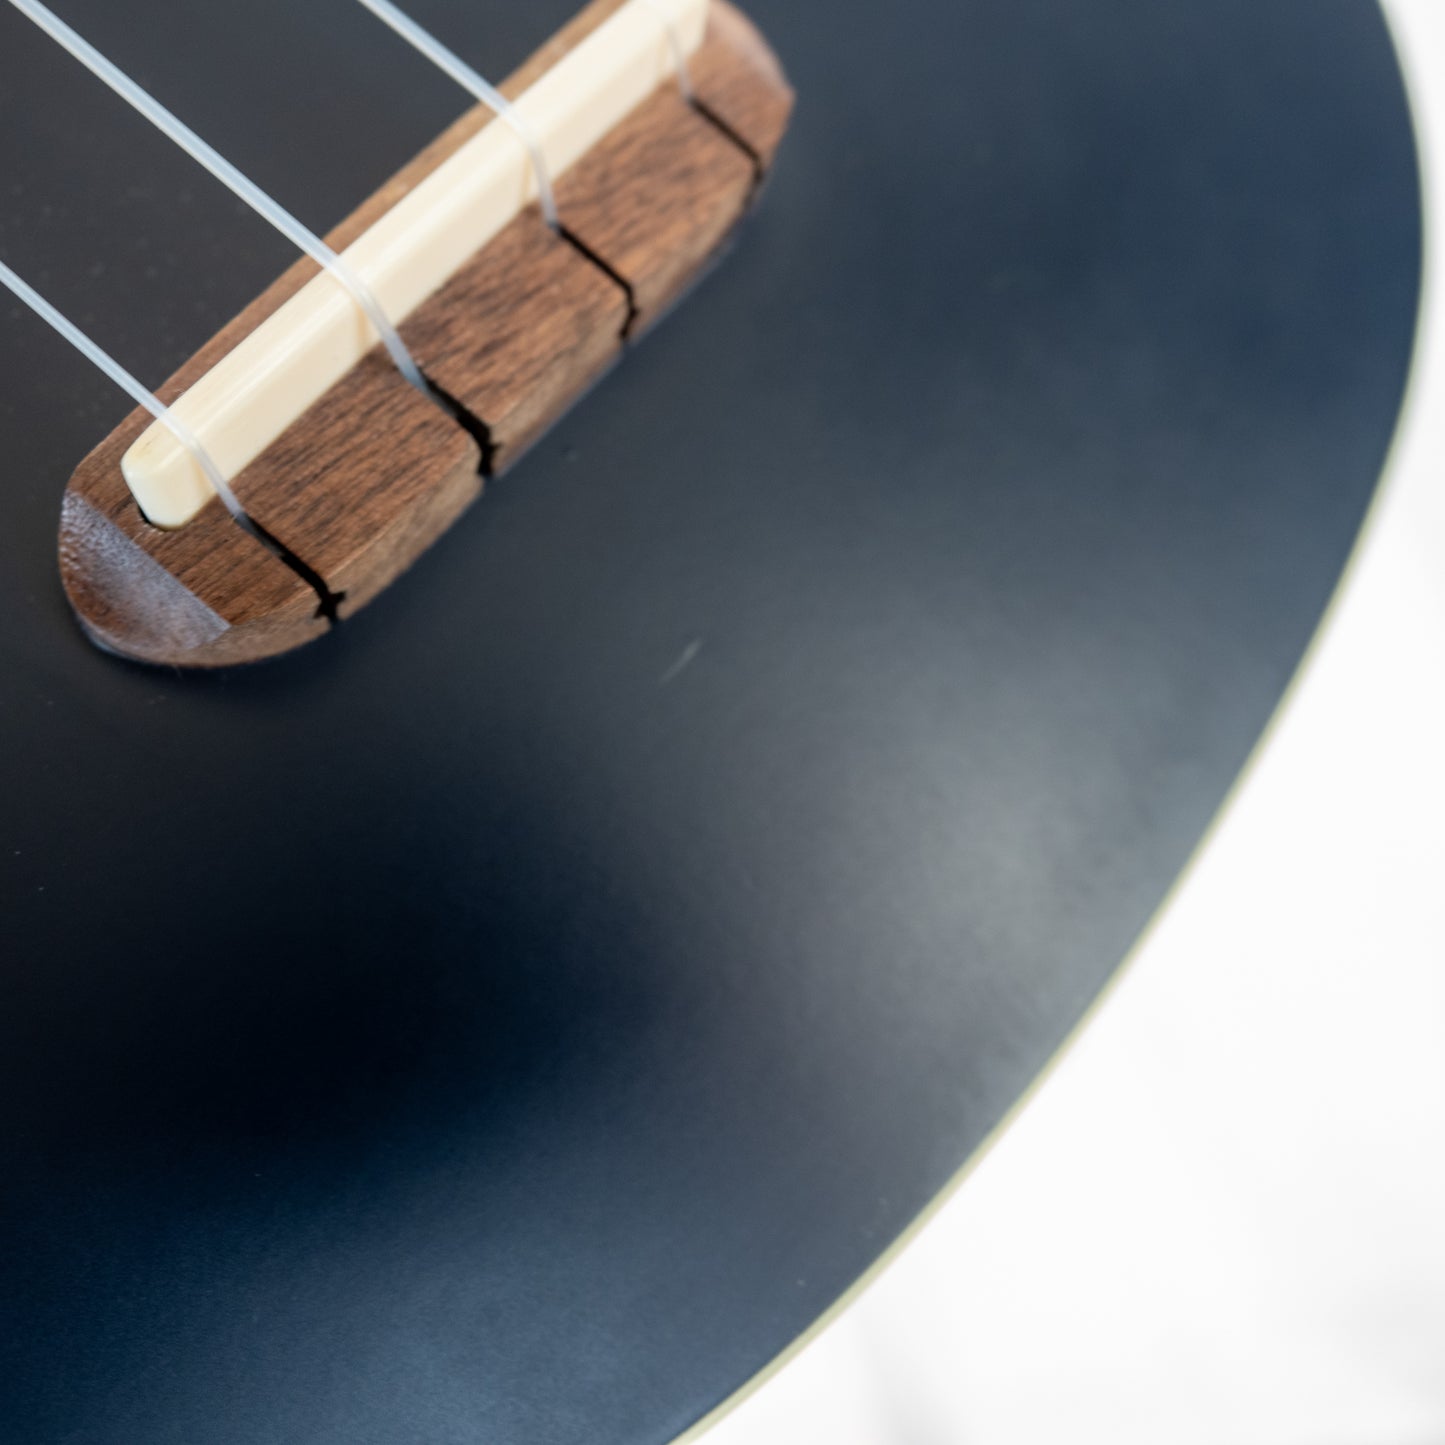 Fender Grace VanderWaal "Moonlight" soprano ukulele with gigbag accessory bundle.